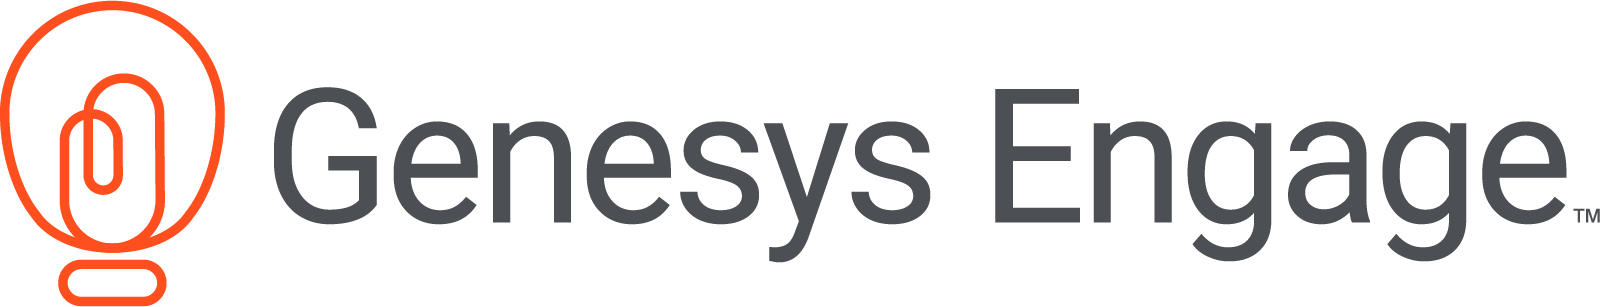 Genesys Engage - Genesys Engage Multicloud